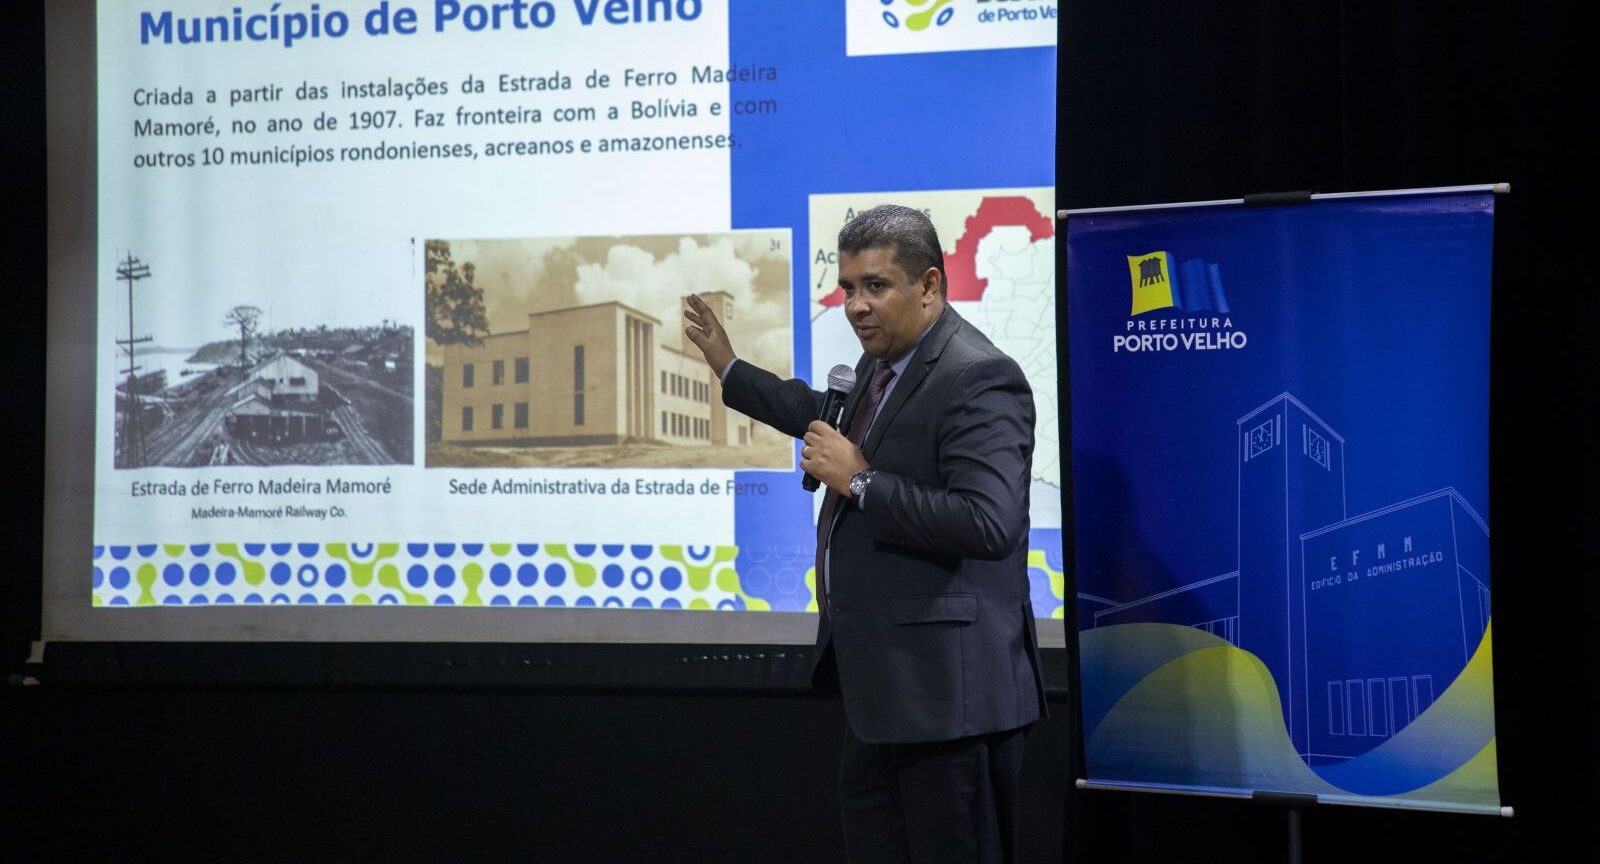 Audiência pública apresenta Plano de Desenvolvimento Econômico Sustentável para Porto Velho